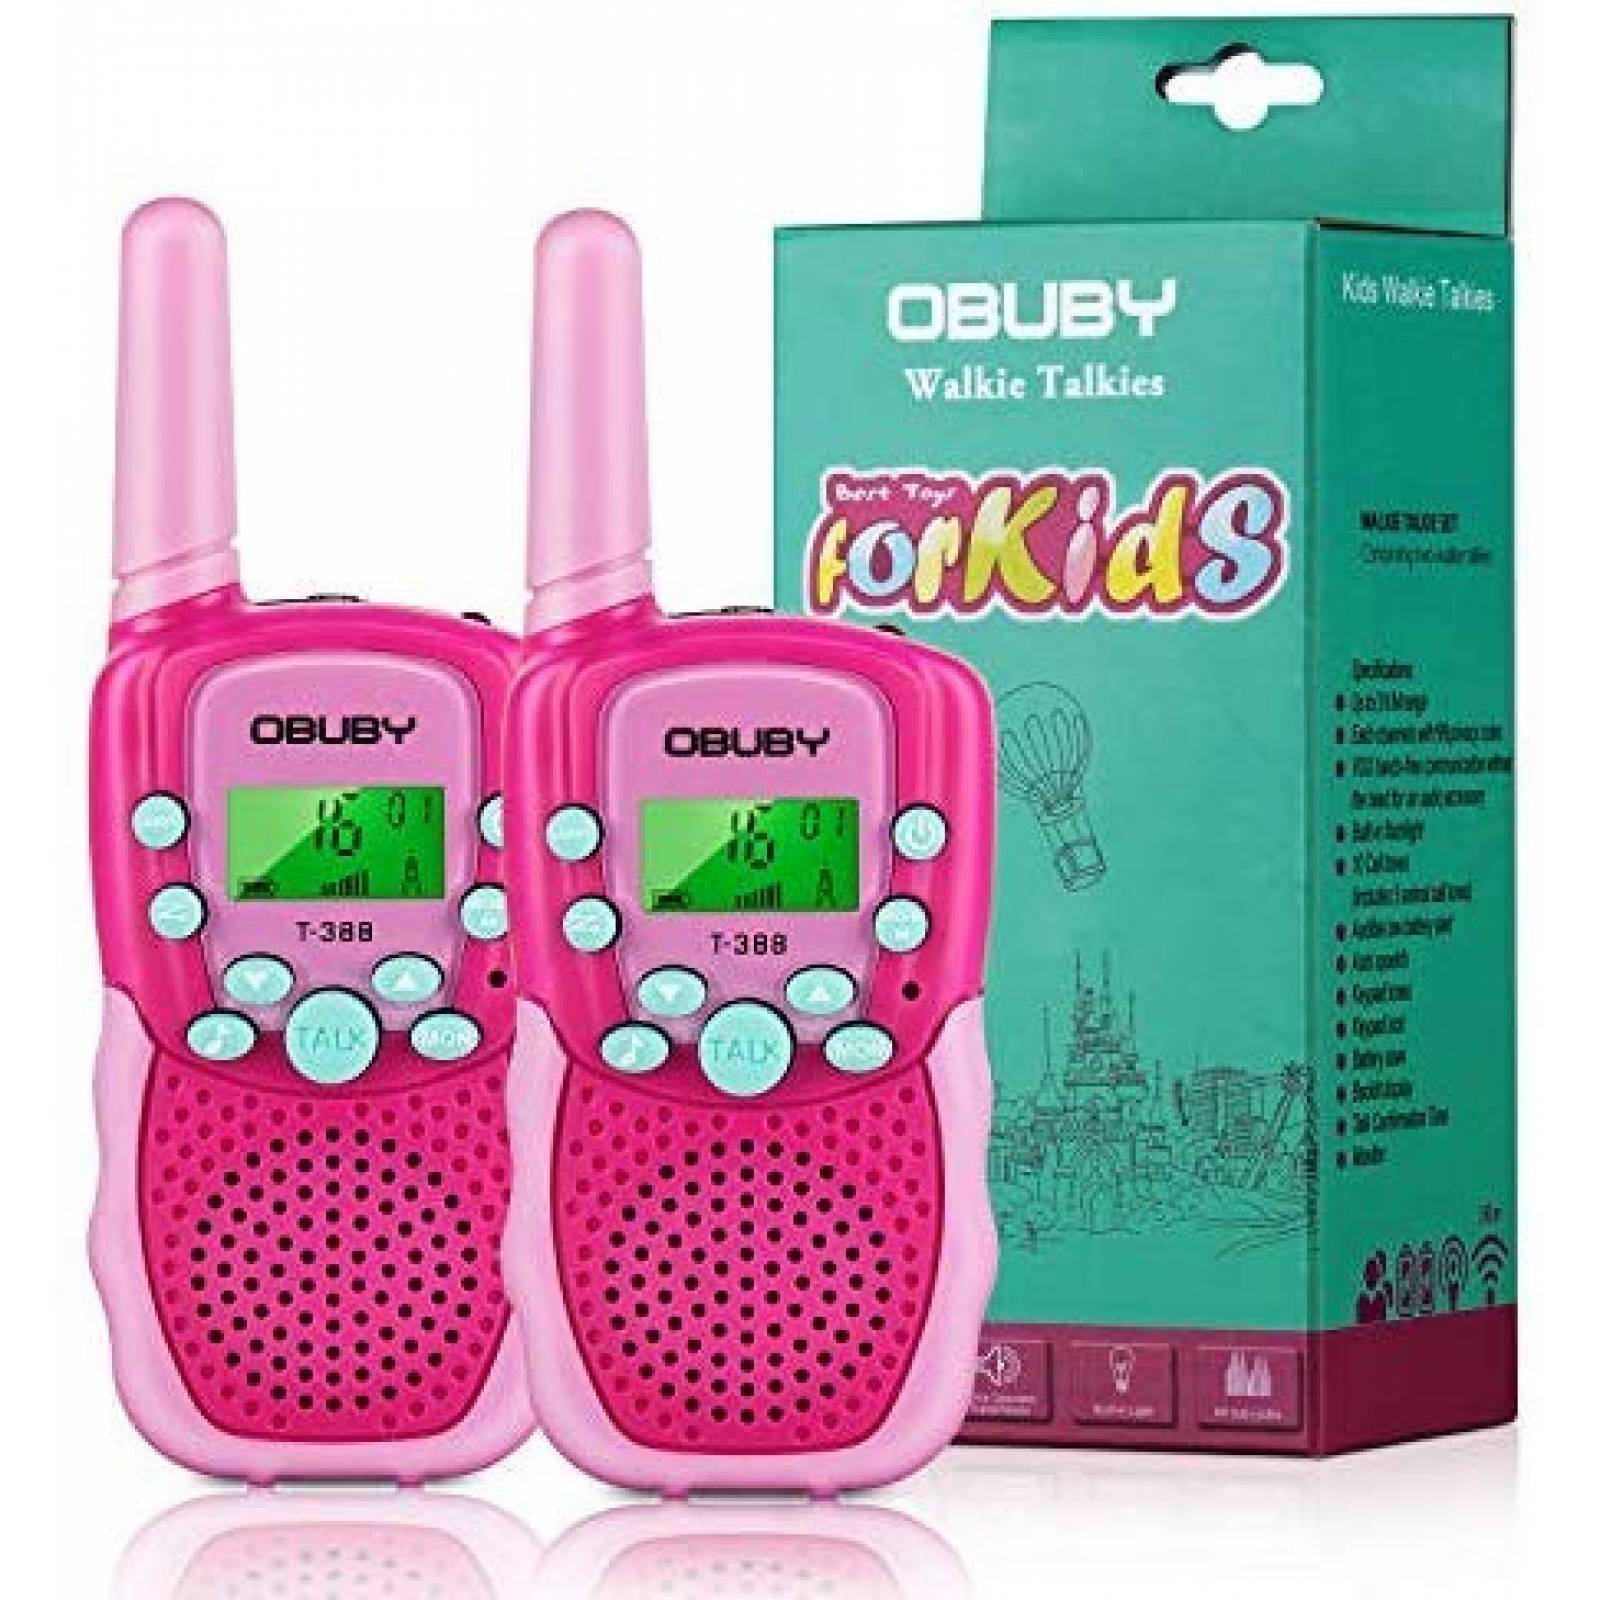 Par de Radios Obuby p/ Niños 3-12 Años 3 Millas -Rosa